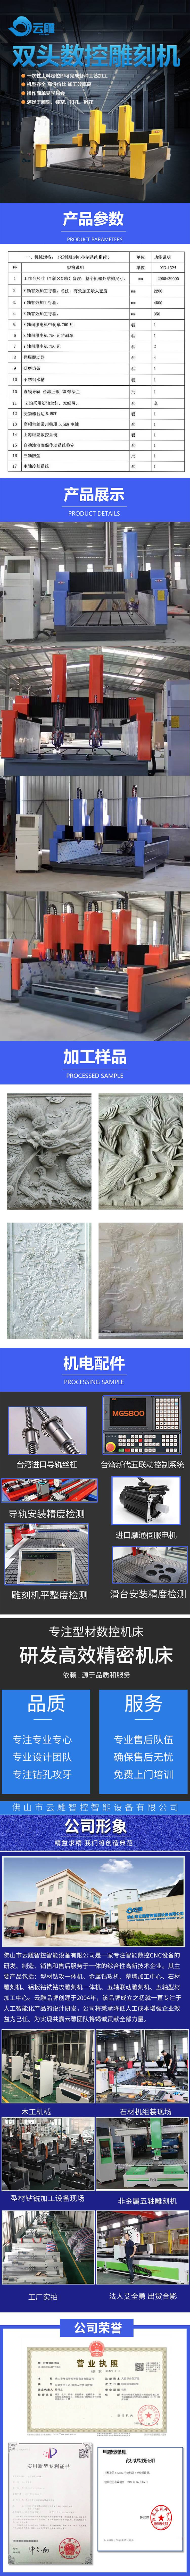 双头石材雕刻机详情页（蓝）(1).jpg